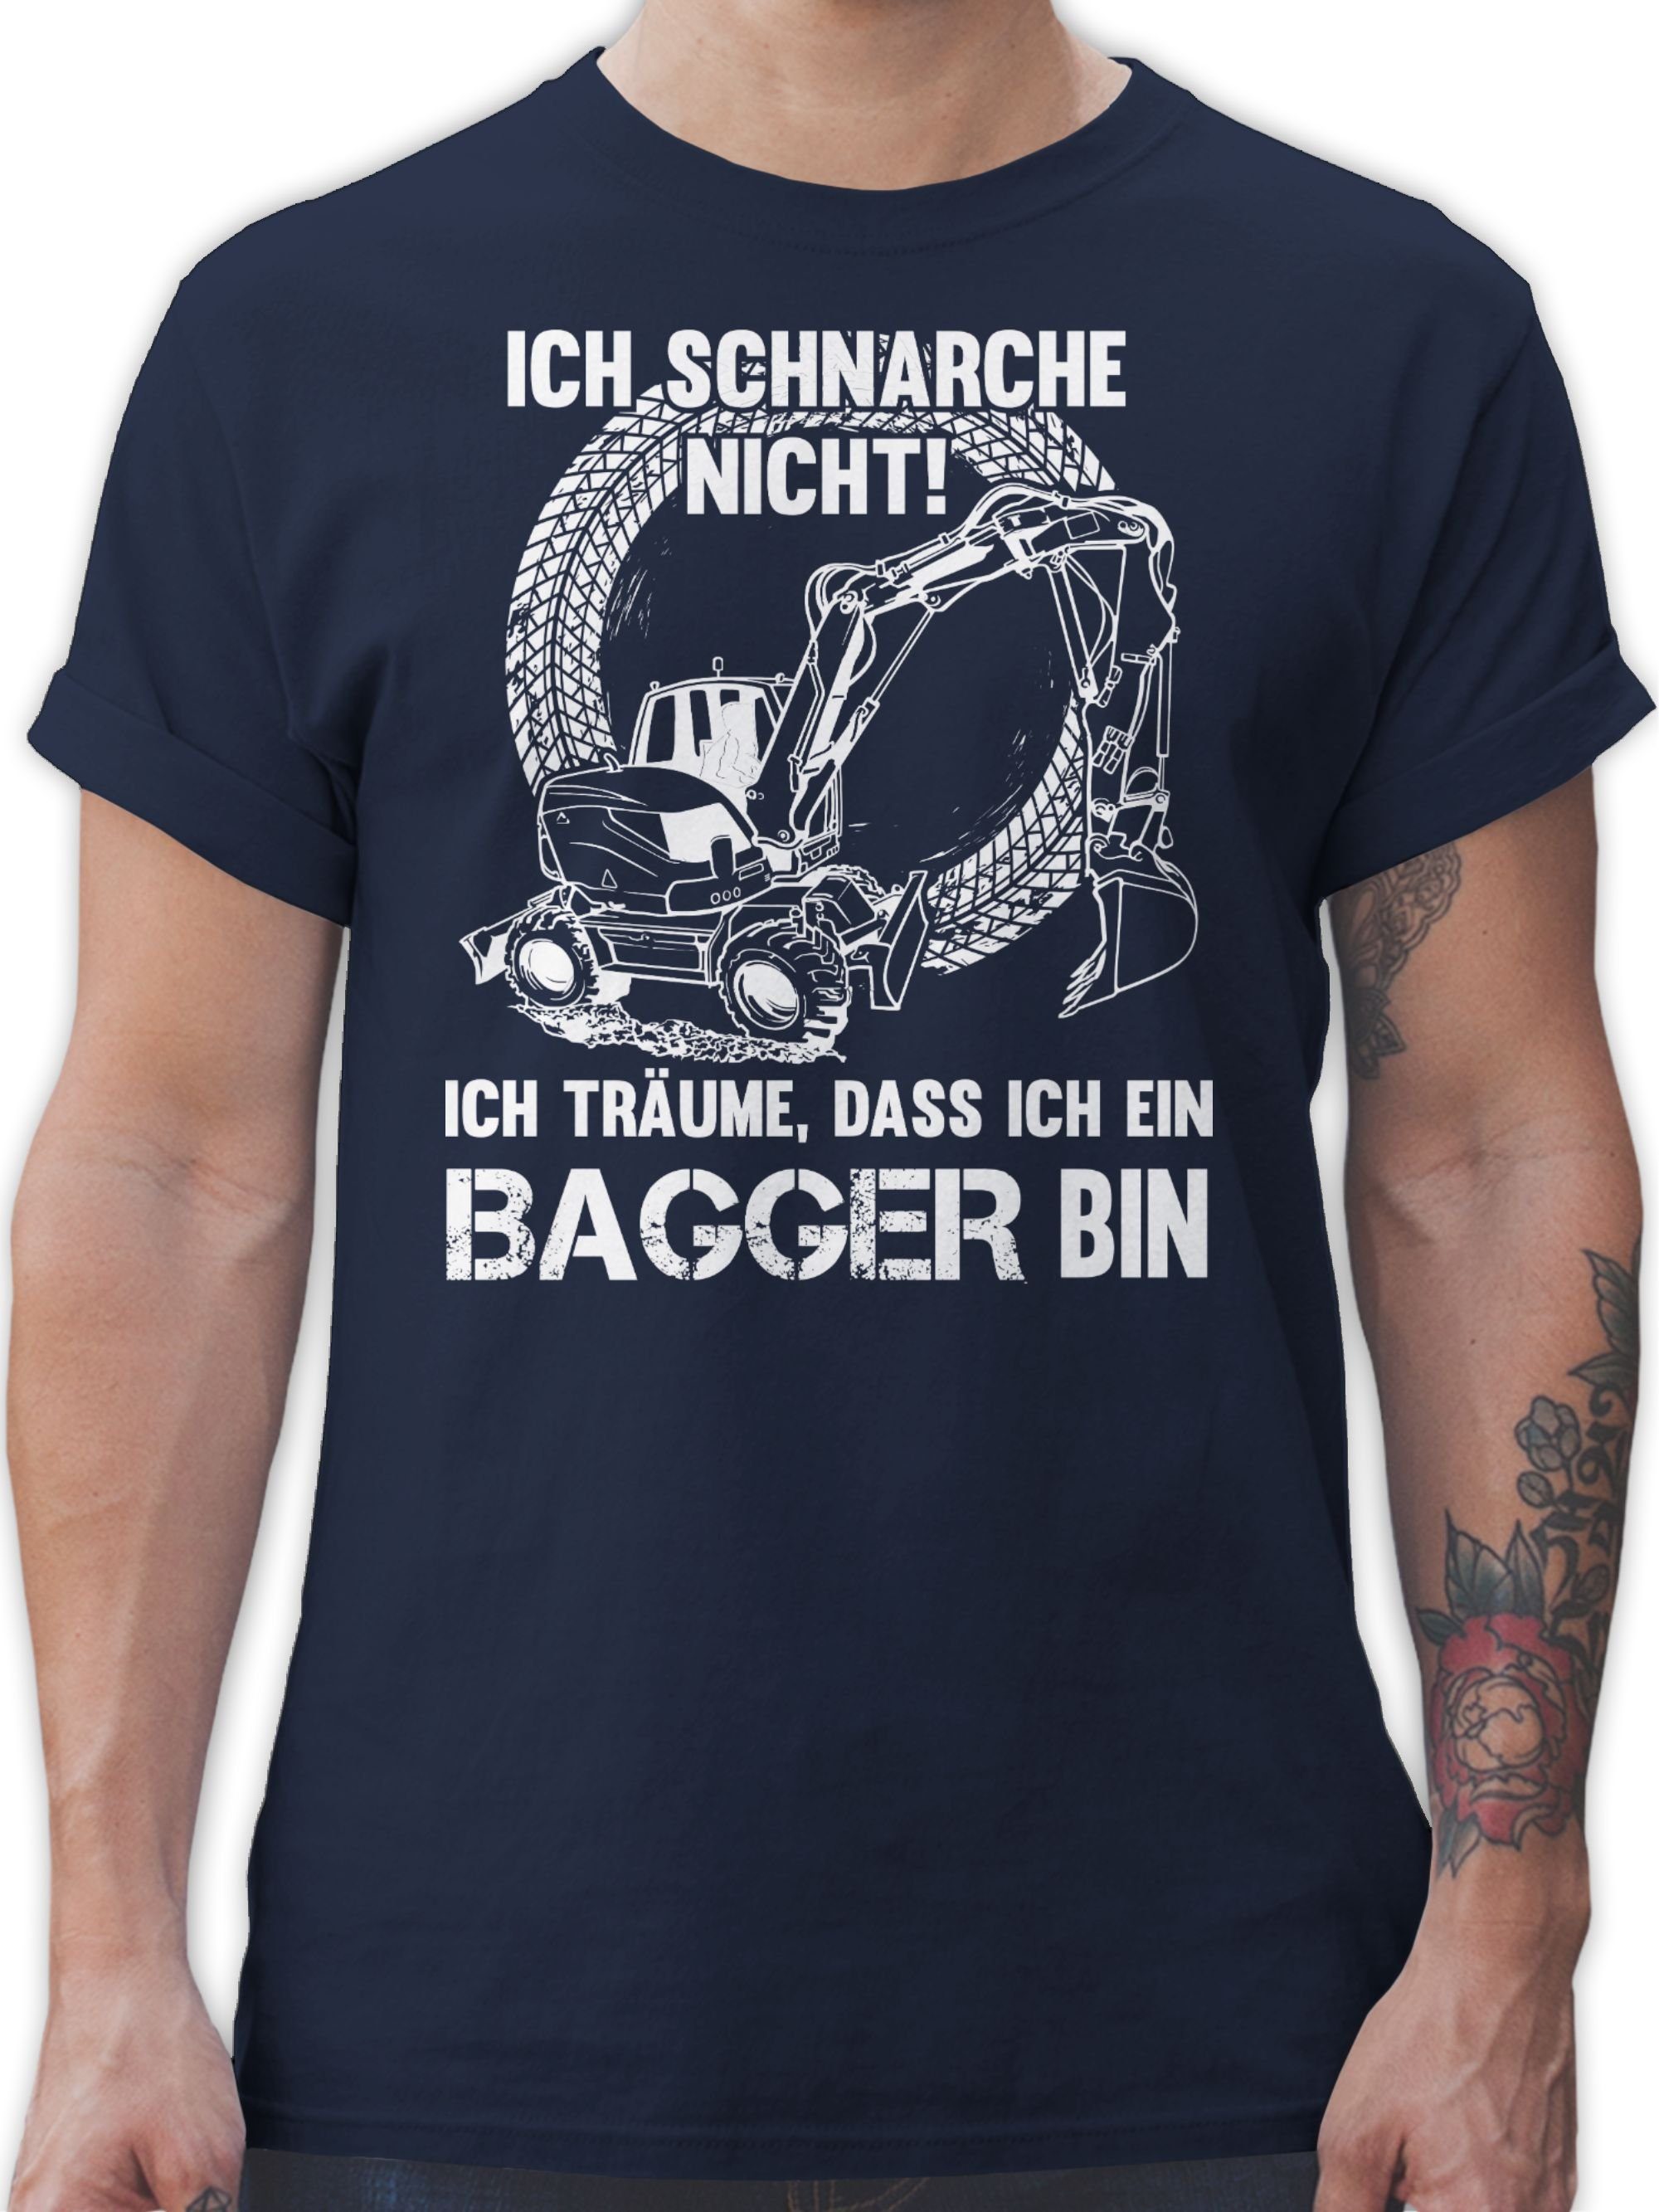 Shirtracer T-Shirt Ich schnarche nicht ich bin ein Bagger Schaufelbagger Sprüche Statement mit Spruch 3 Navy Blau